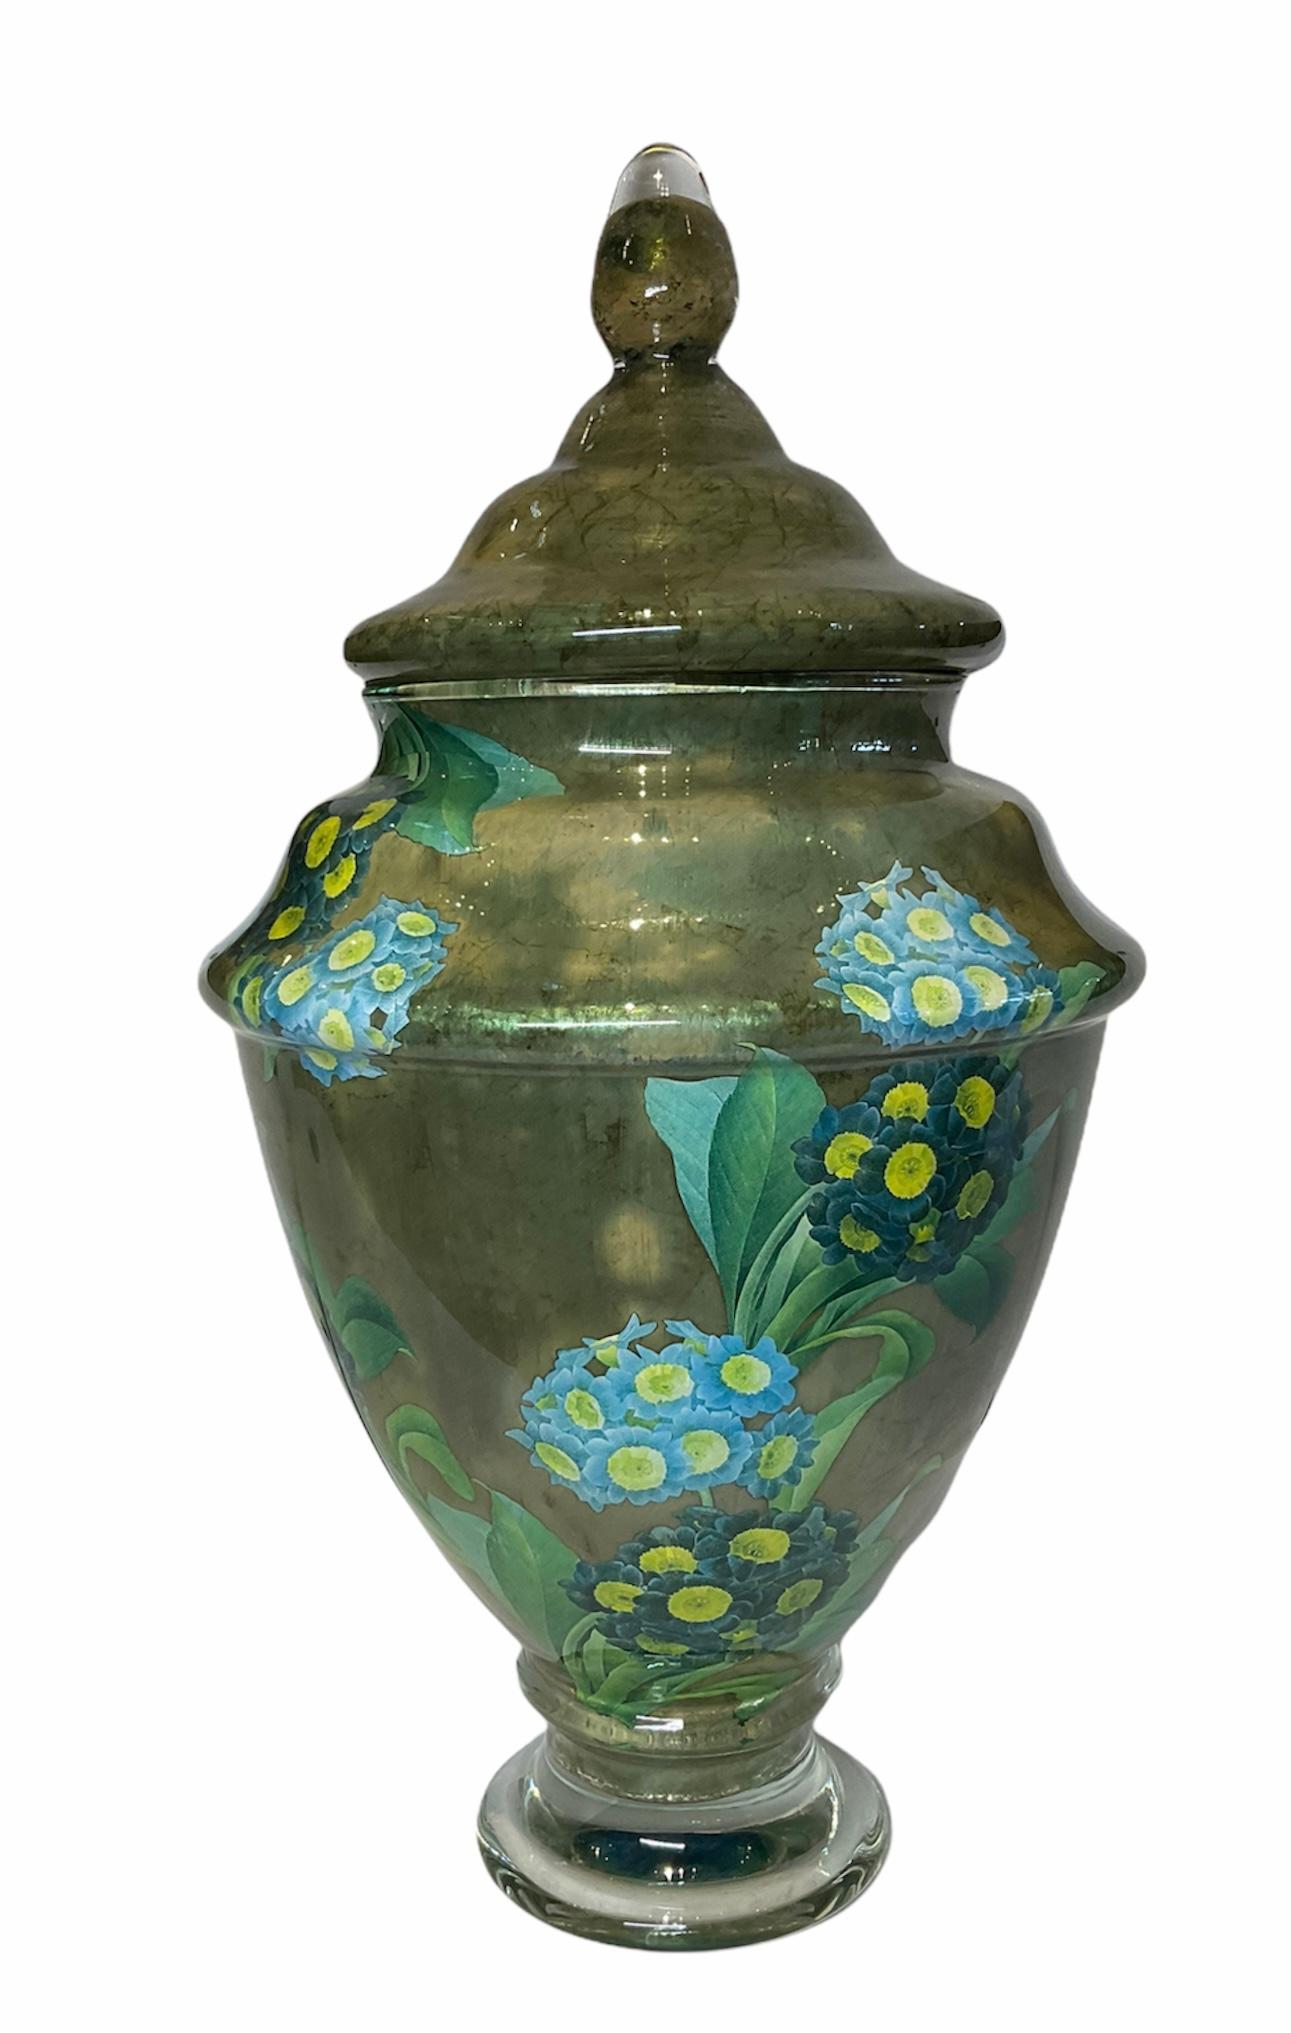 Dies ist eine Scott Potter Art Glass Urne mit Deckel. Es zeigt eine große Urne mit dekupiertem olivgrünem Aufdruck, die mit zwei Sträußen aus hell- und dunkelblauen Hortensienblüten geschmückt ist. Diese Technik stammt aus dem 18. Jahrhundert, und